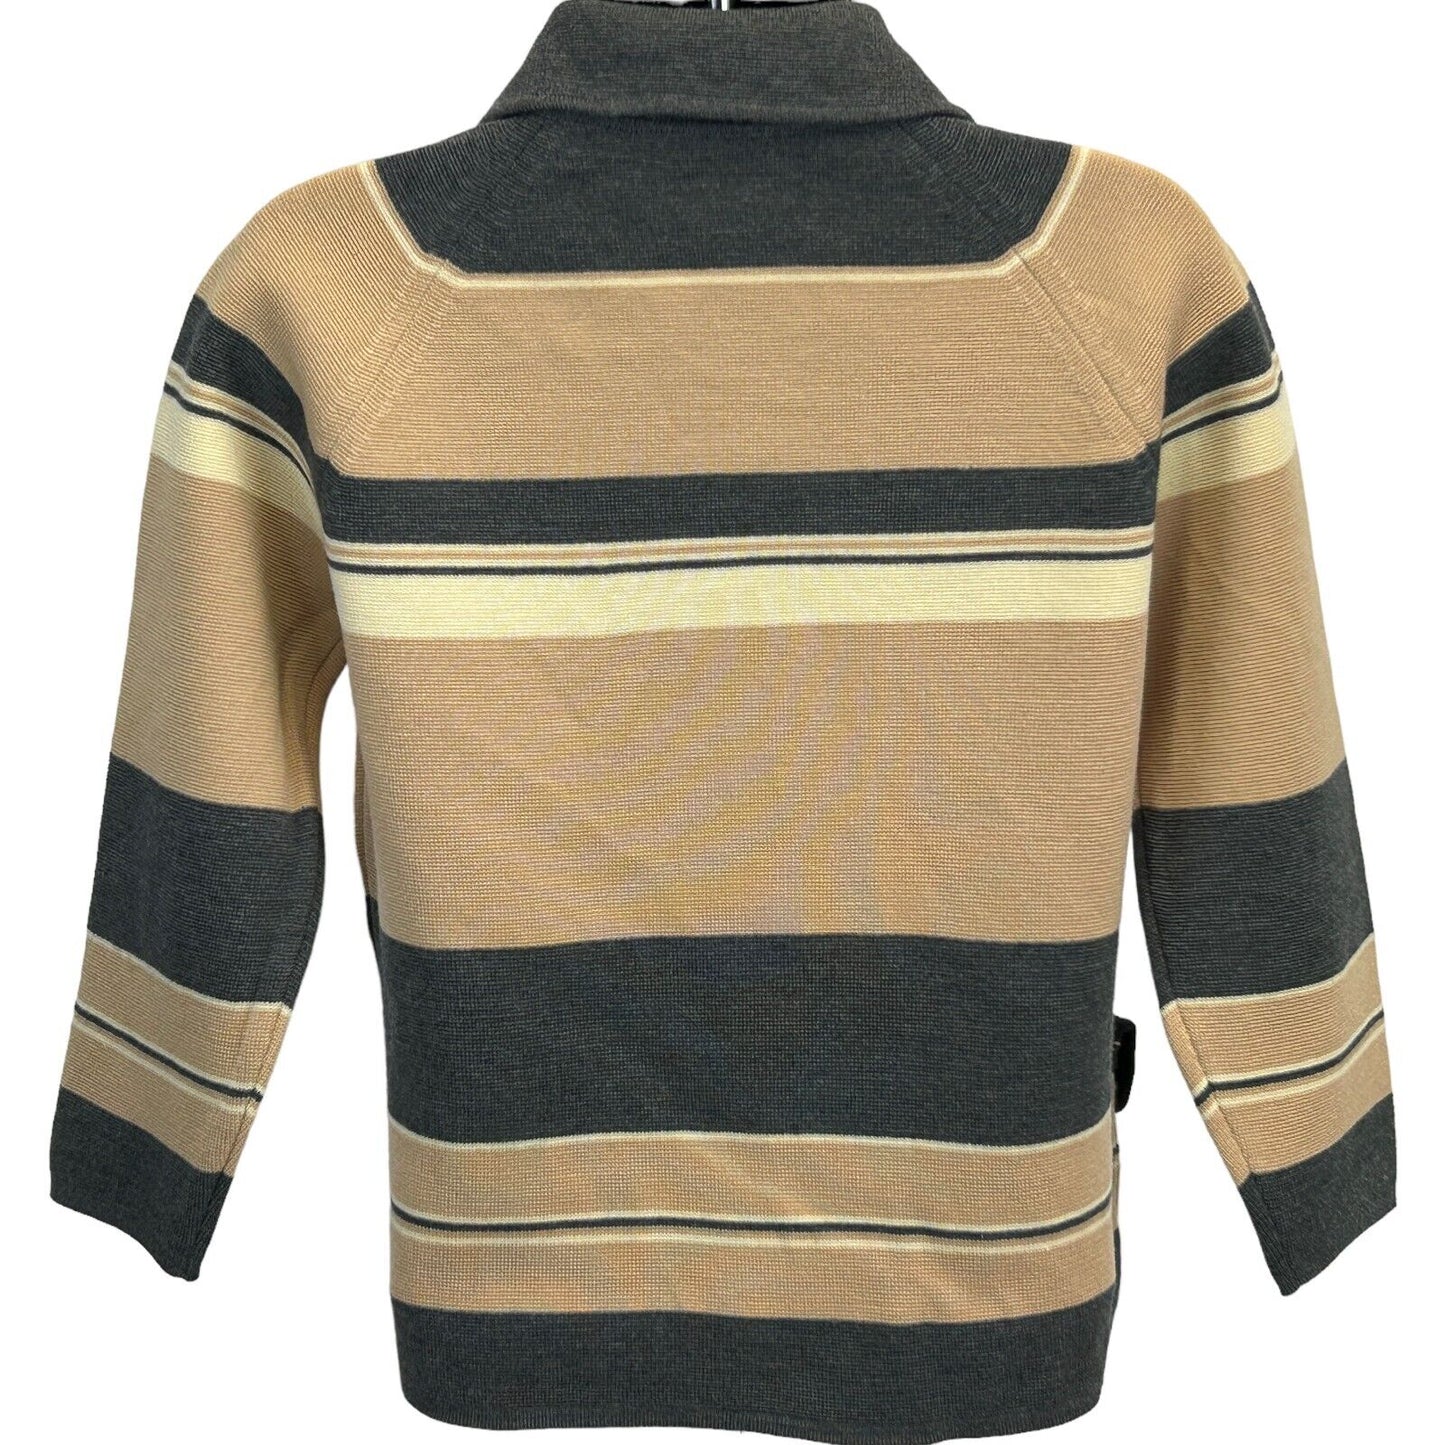 Gia Ninno para Joyce Vintage 60s mujer lana cuello suéter beige gris pequeño